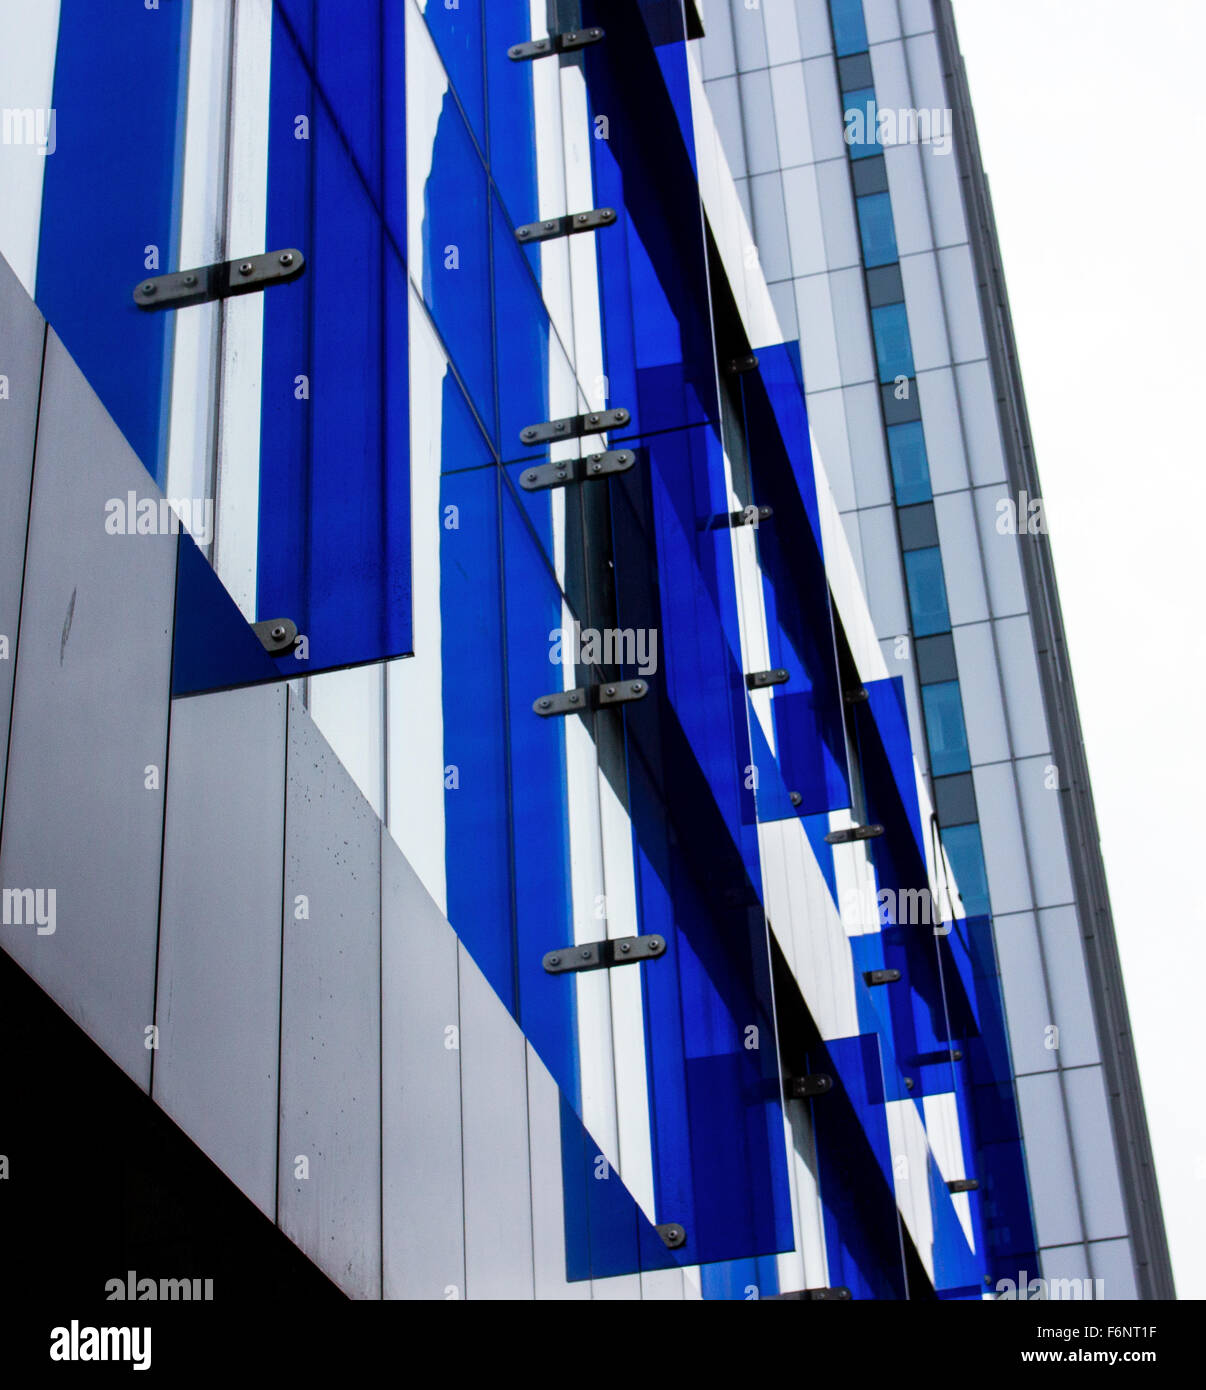 Arquitectura en Glasgow, el cristal azul Foto de stock